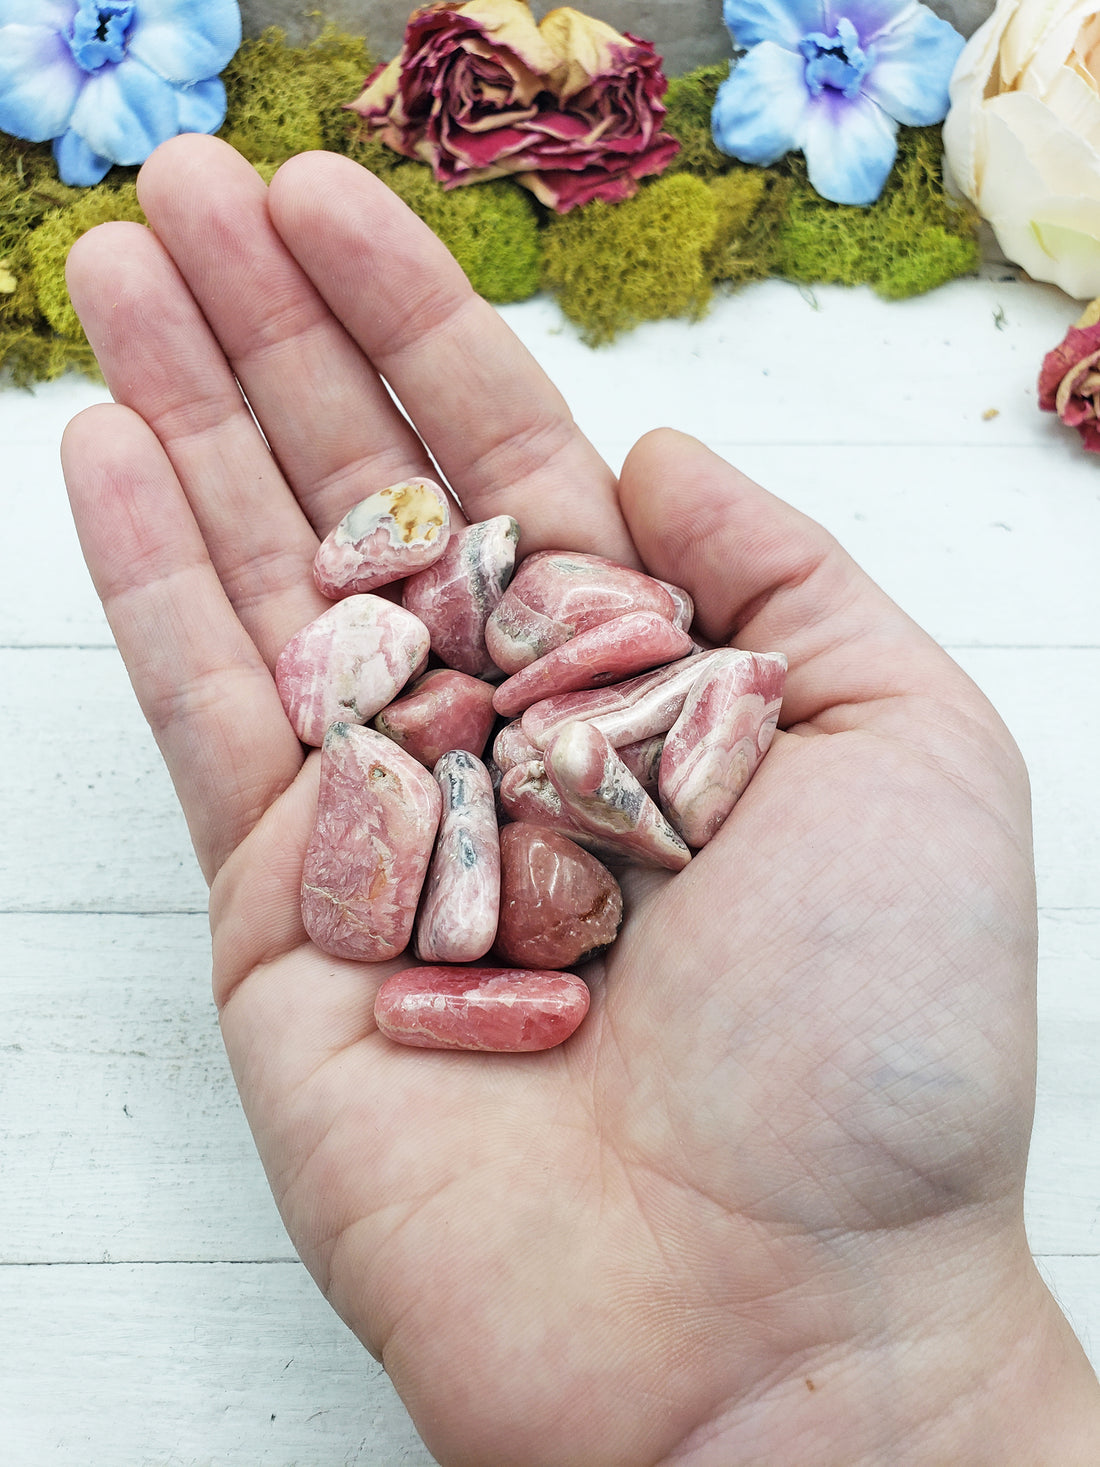 rhodocrosite stones in hand